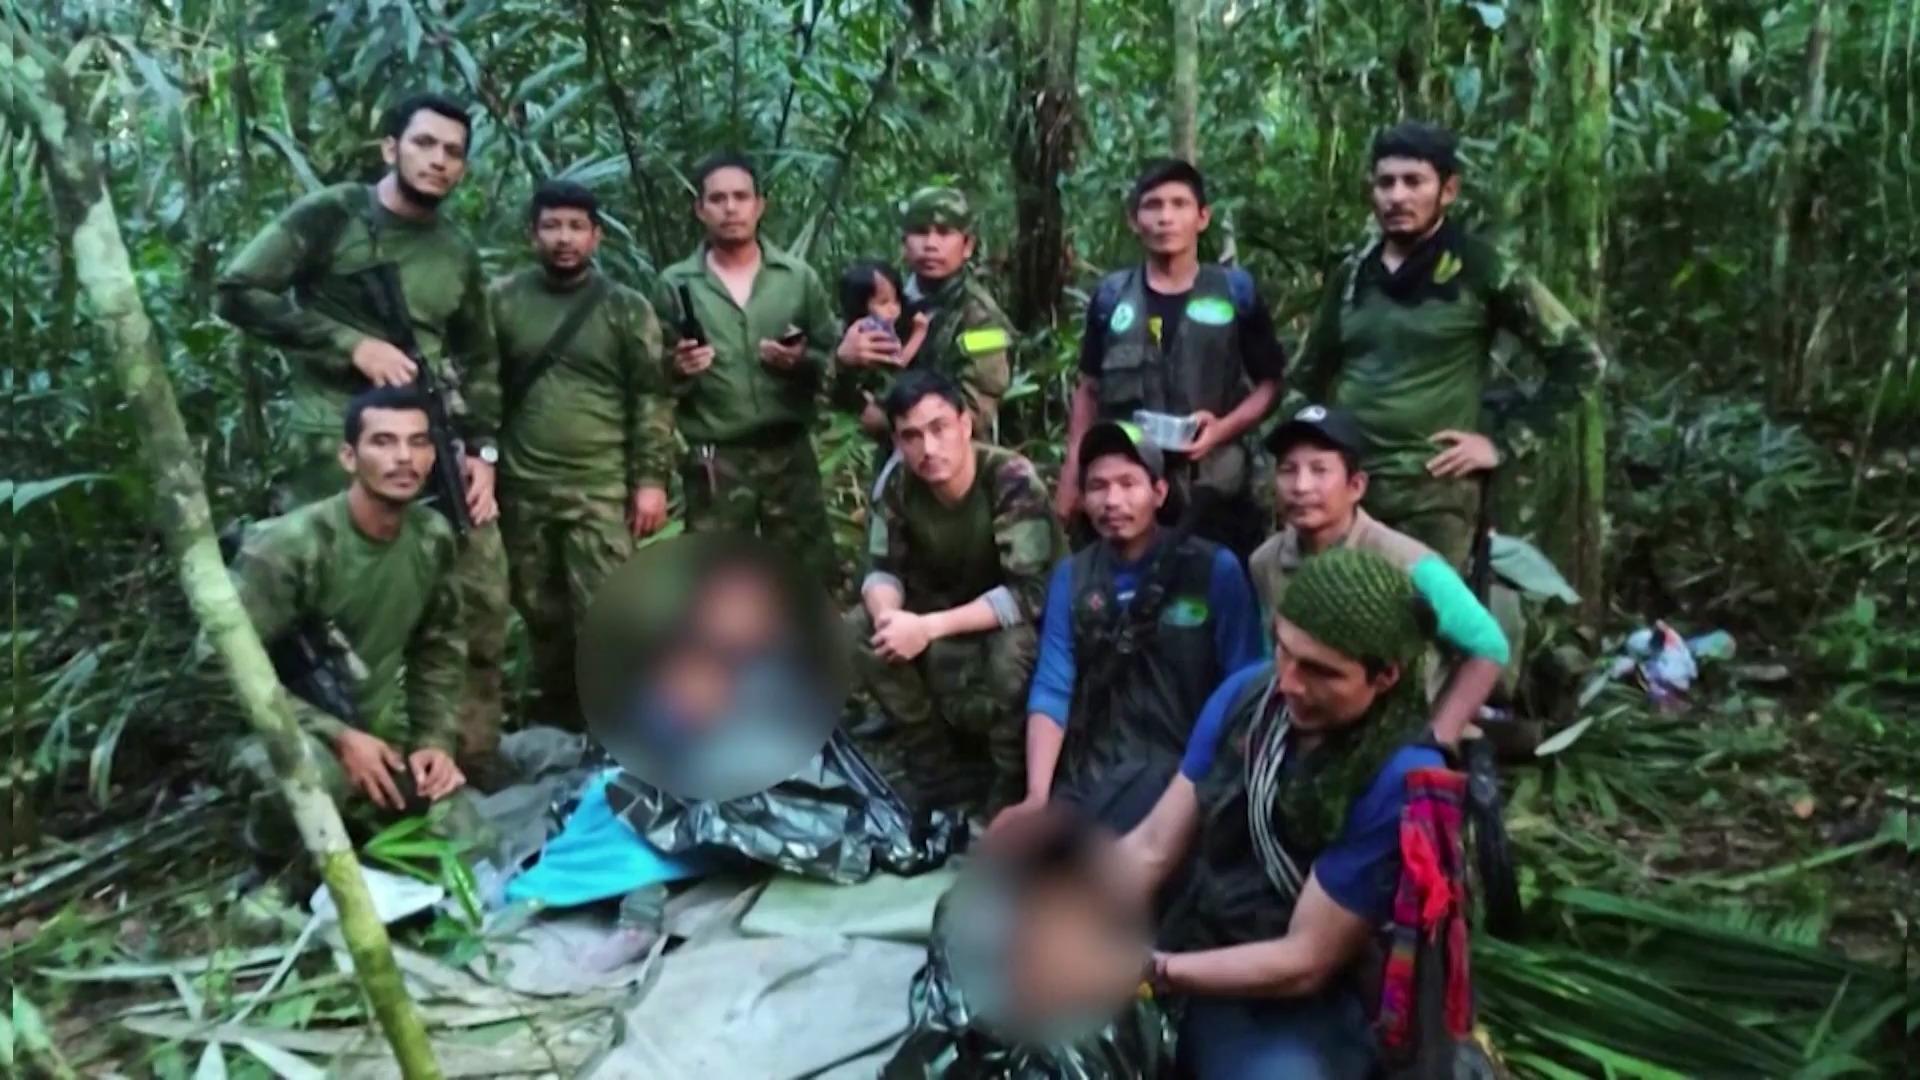 Vier Geschwister 40 Tage nach Flugzeugabsturz gerettet Wunder im kolumbianischen Dschungel!